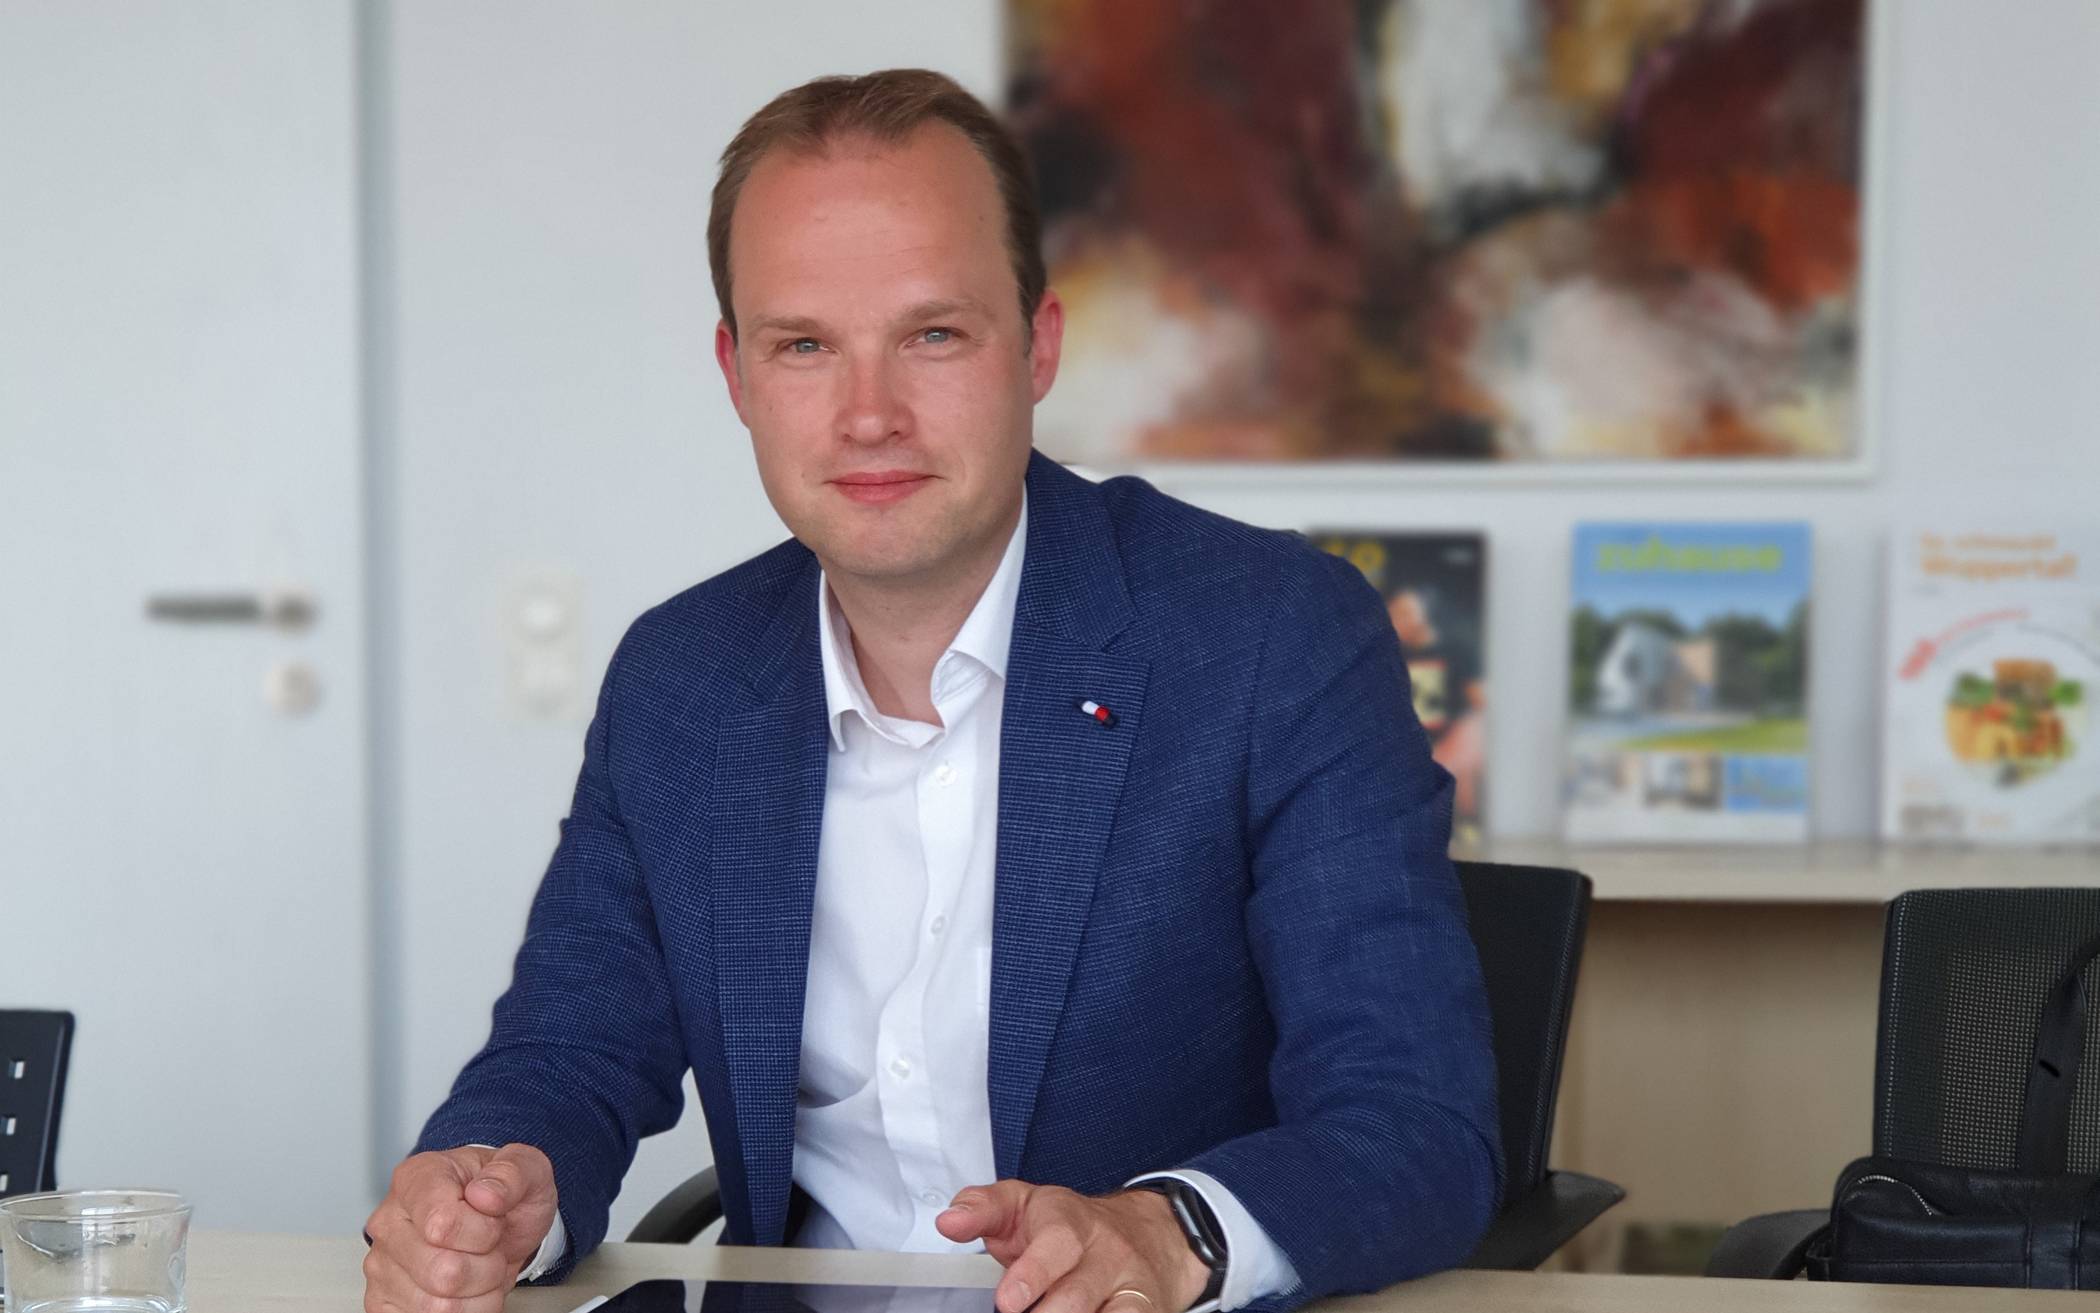  Marcel Hafk tritt bei der Kommunalwahl am 13. September für die FDP als Oberbürgermeister-Kandidat an. 